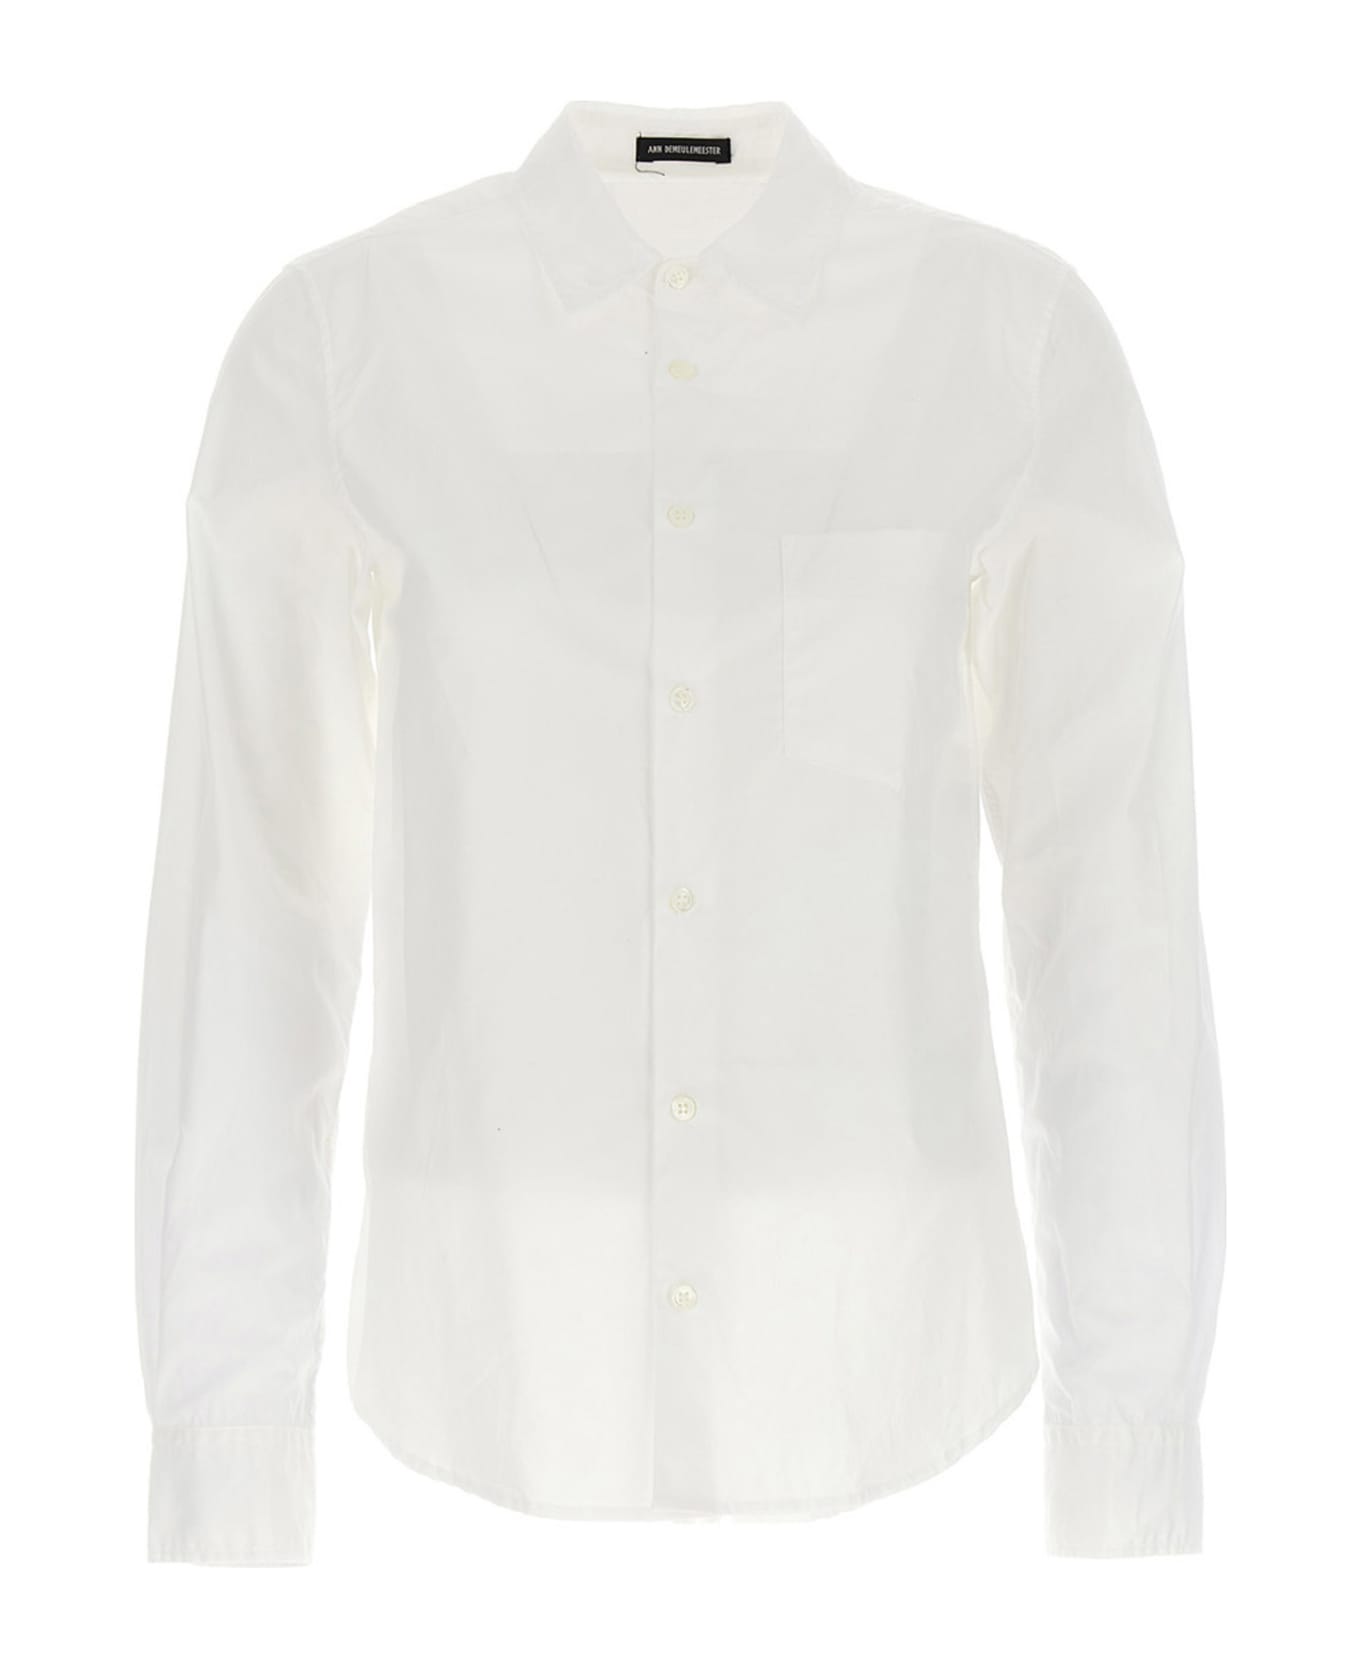 Ann Demeulemeester 'betty' Shirt - White シャツ